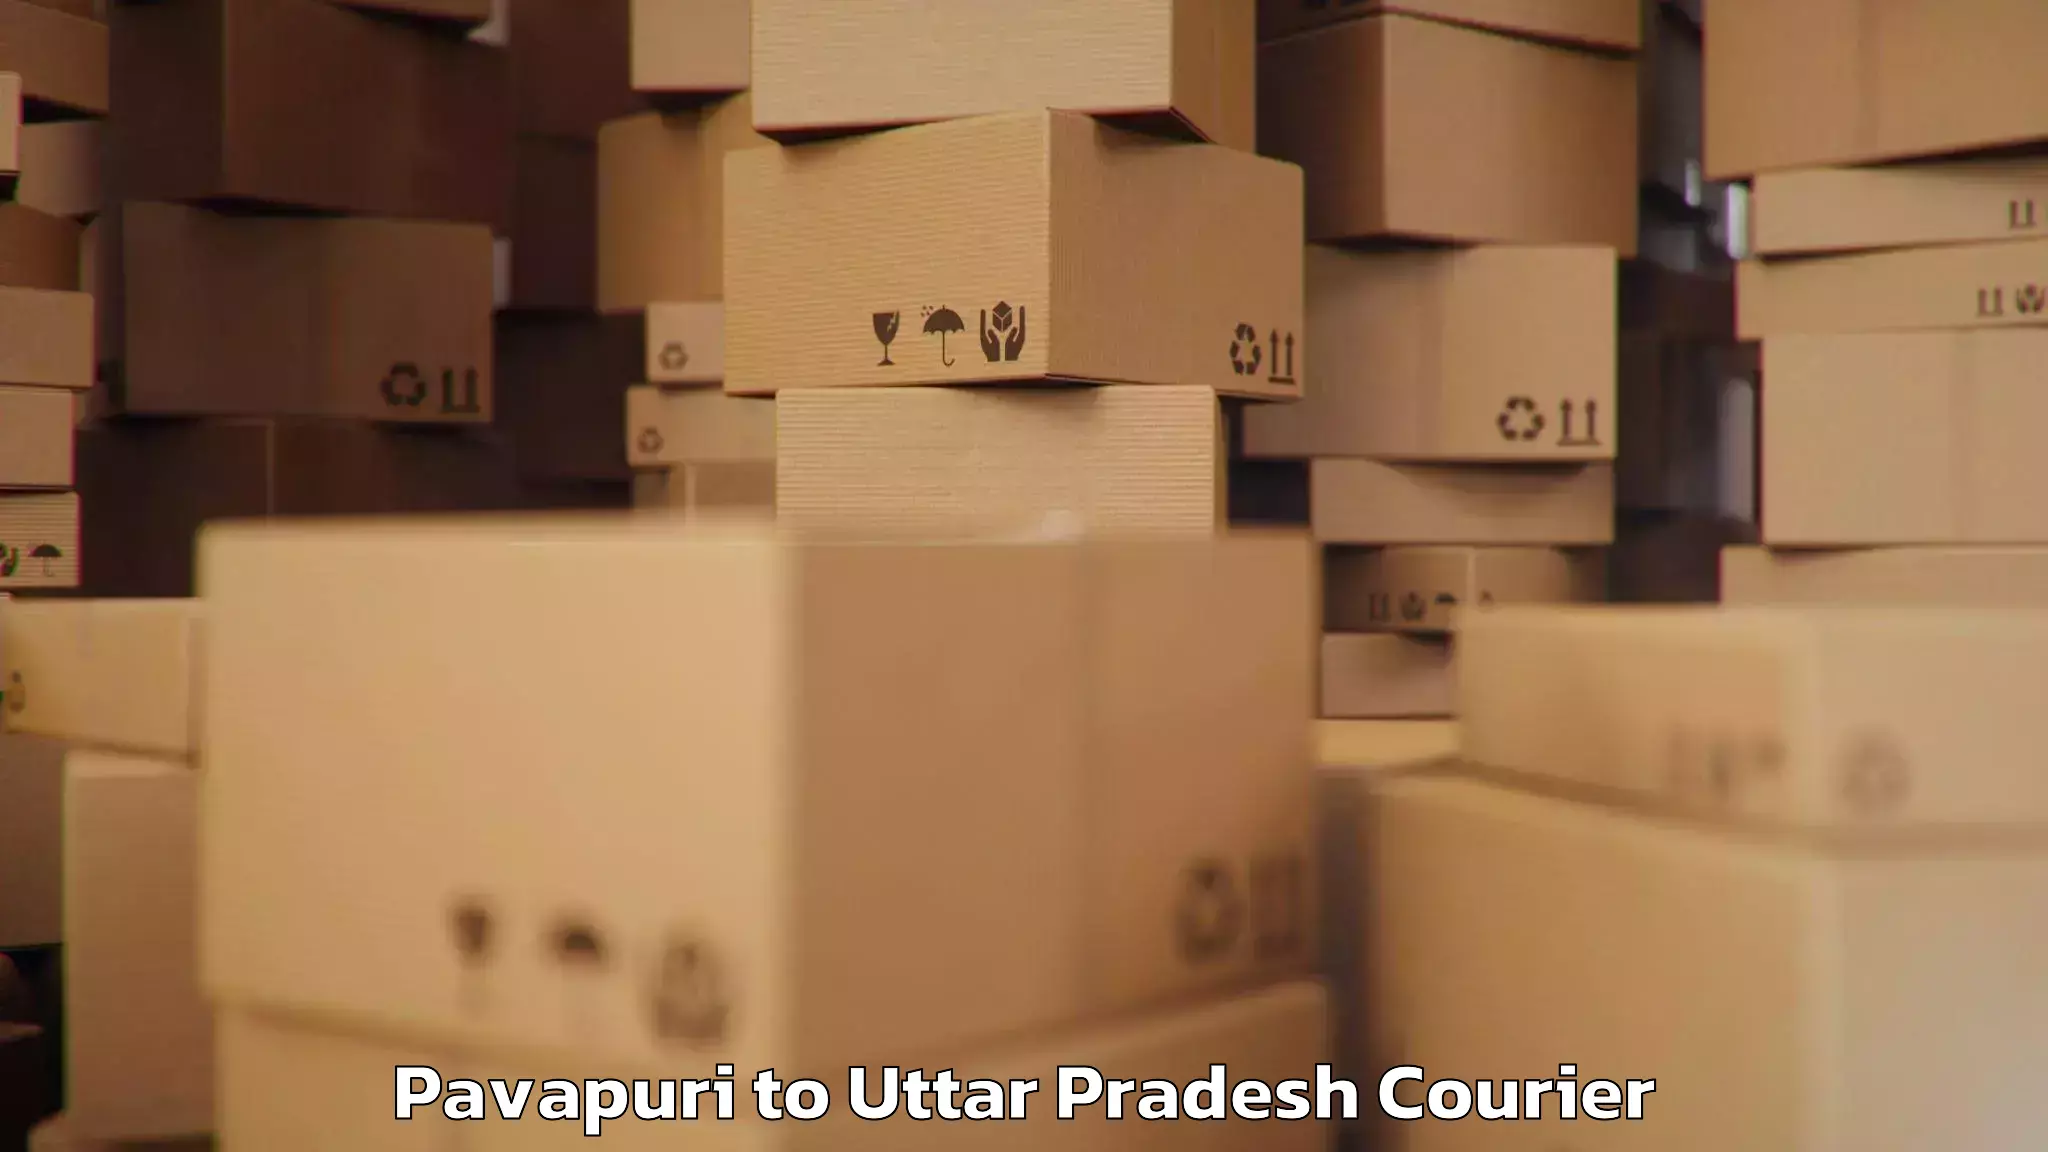 Baggage shipping service Pavapuri to Jhansi